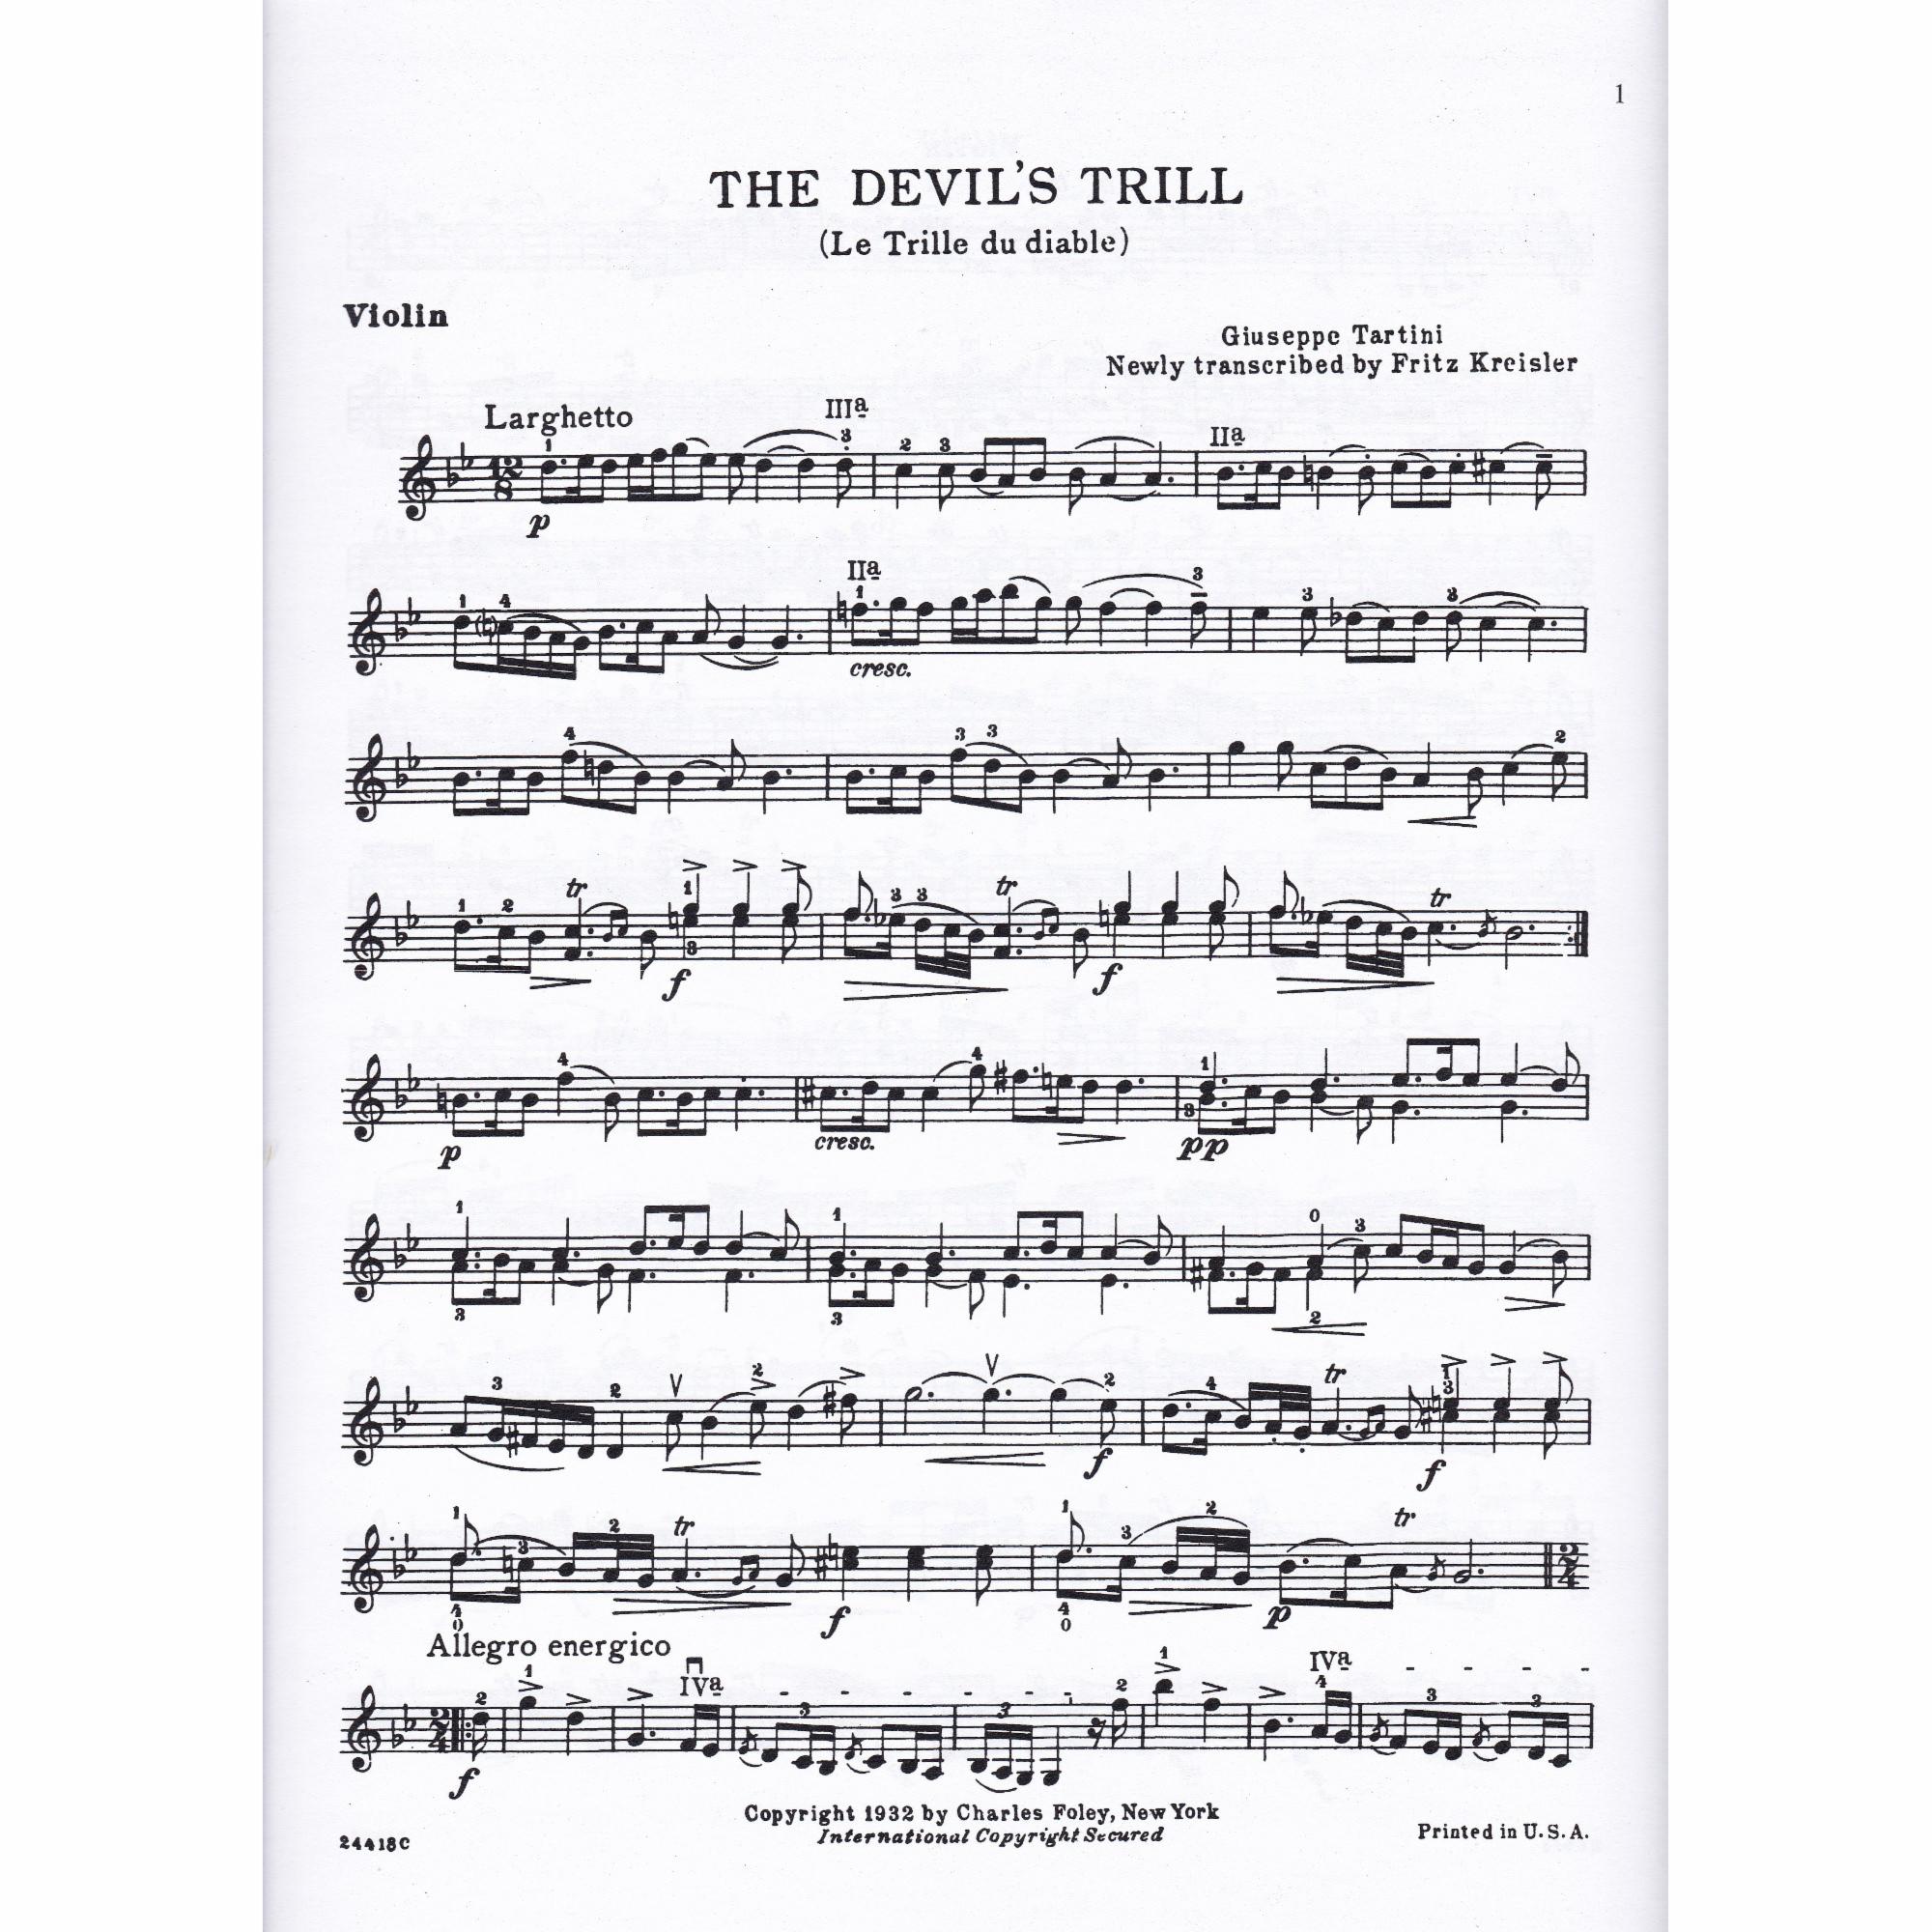 The Devil's Trill Sonata